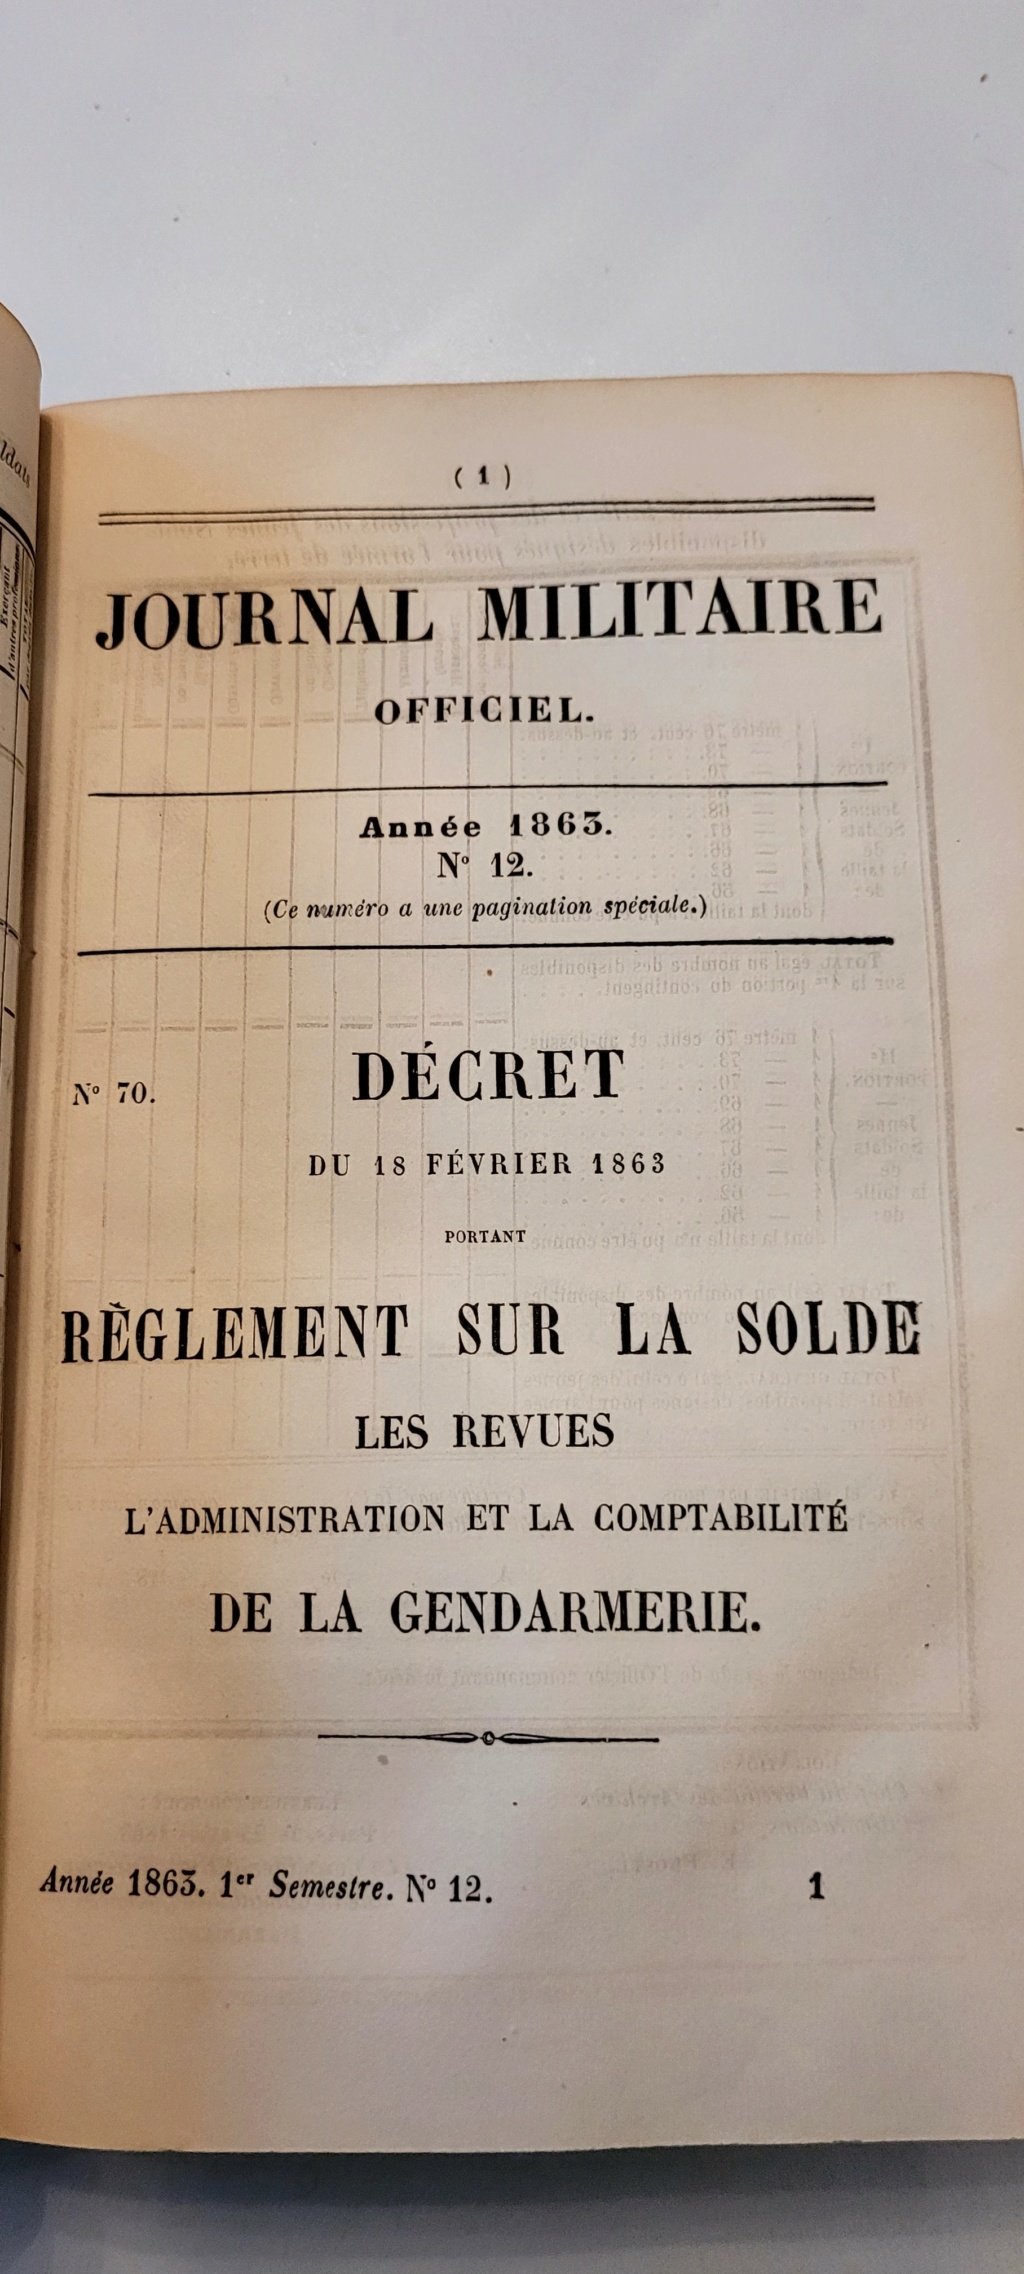 Journal Militaire 1856 et 1863 20221234